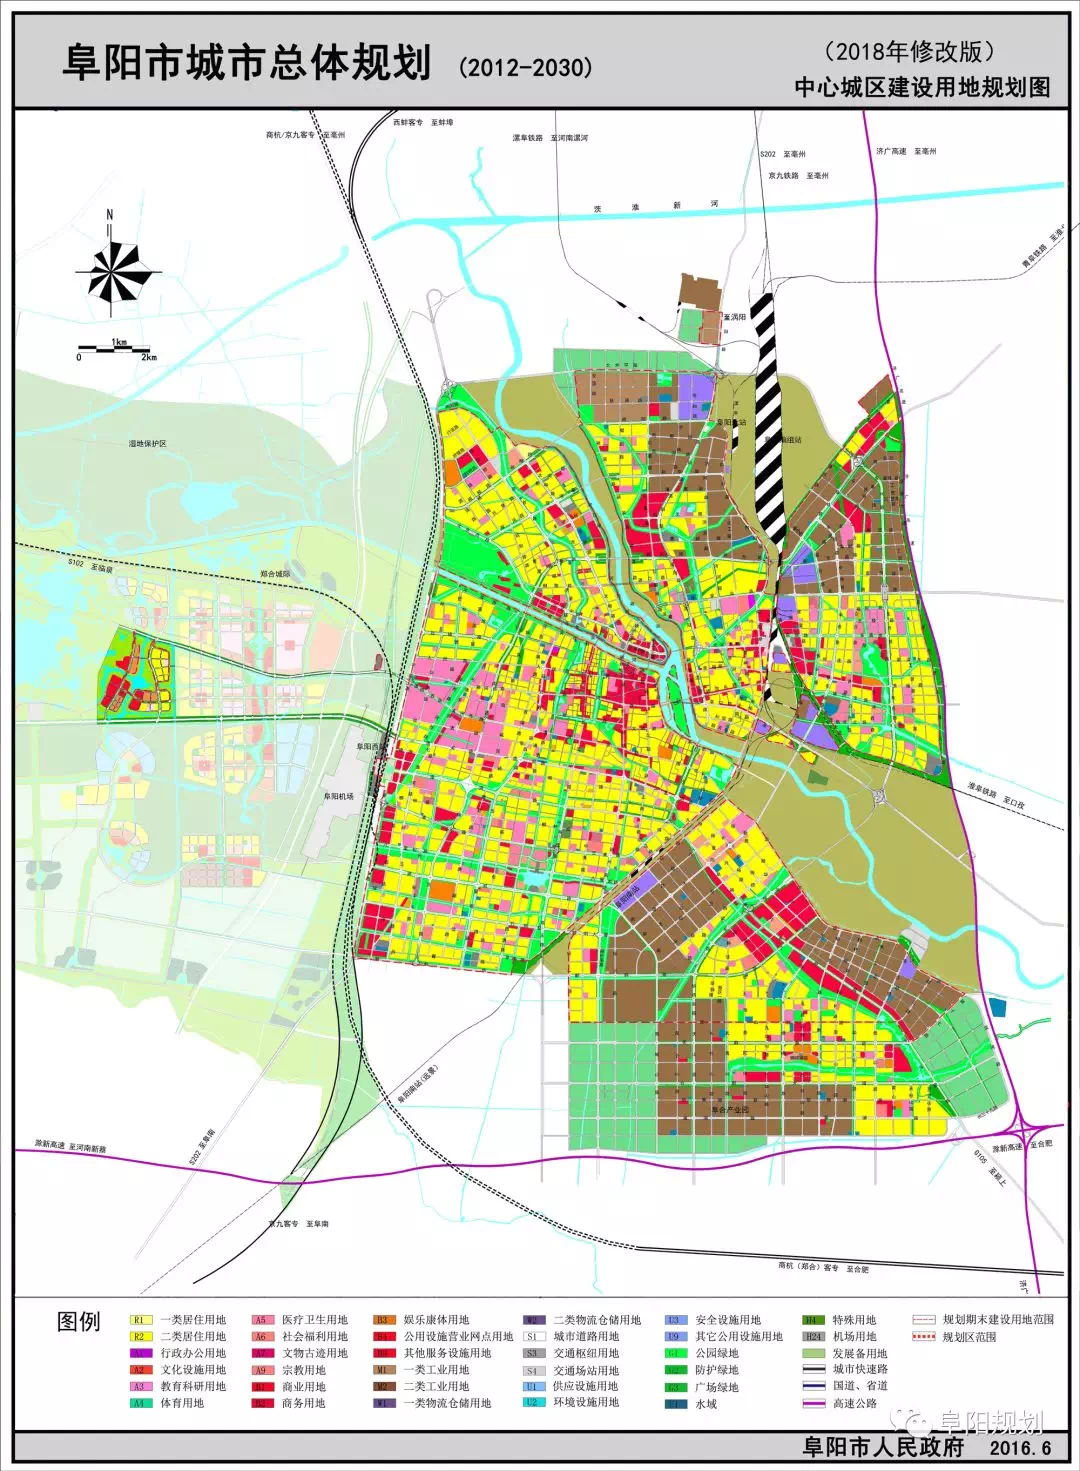 阜阳市城市总体规划修改方案公示 动态维护让规划适应